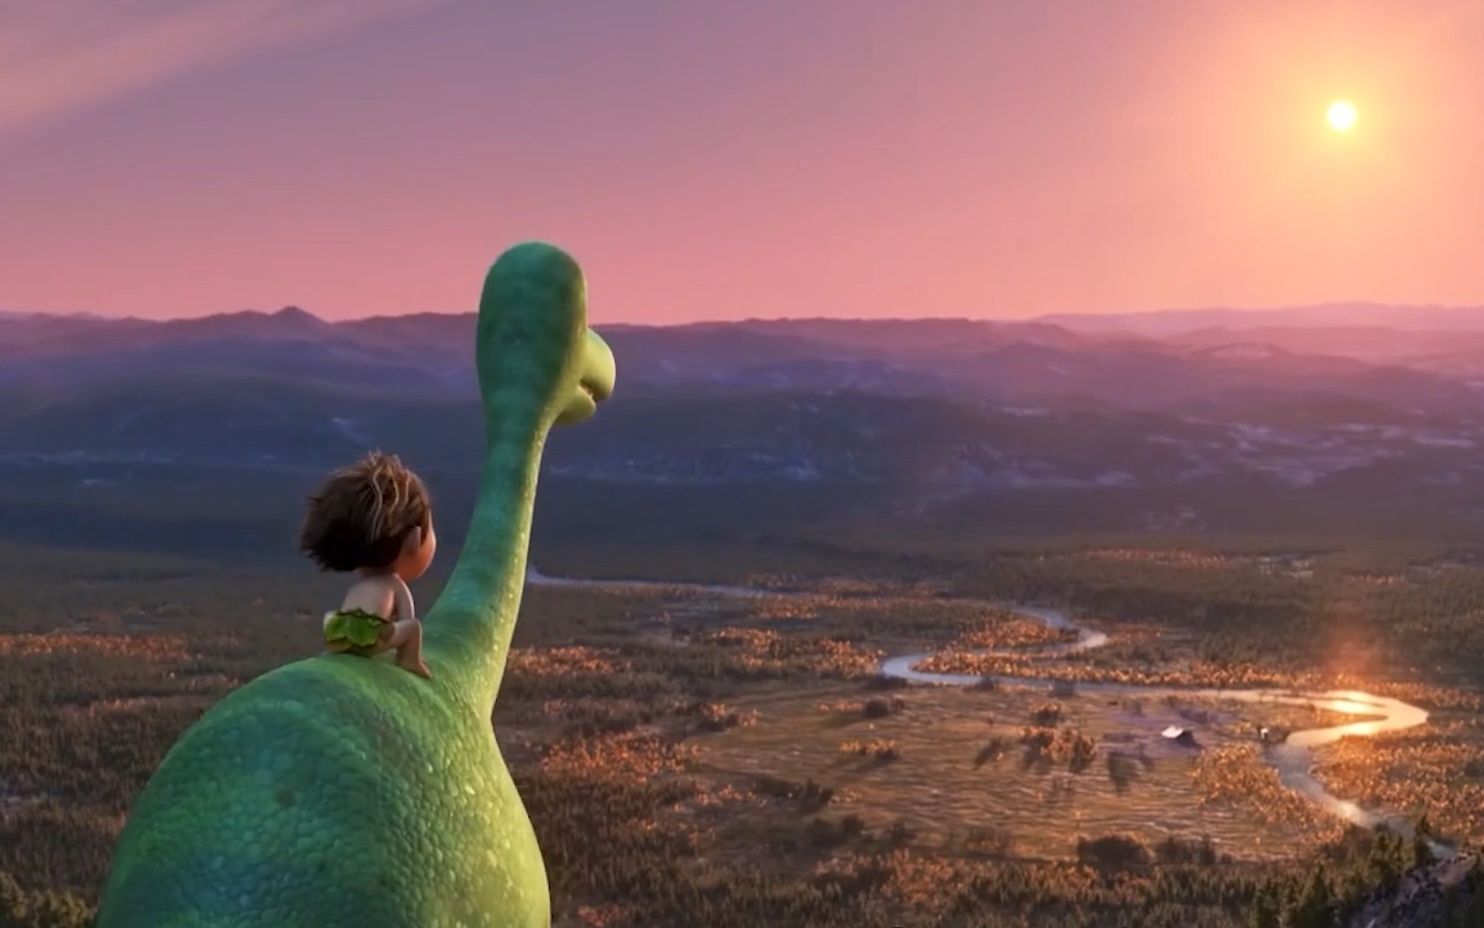 《恐龙当家》3/3爱冒险的雷龙阿罗与小野人成为了朋友,虽然身高差悬殊